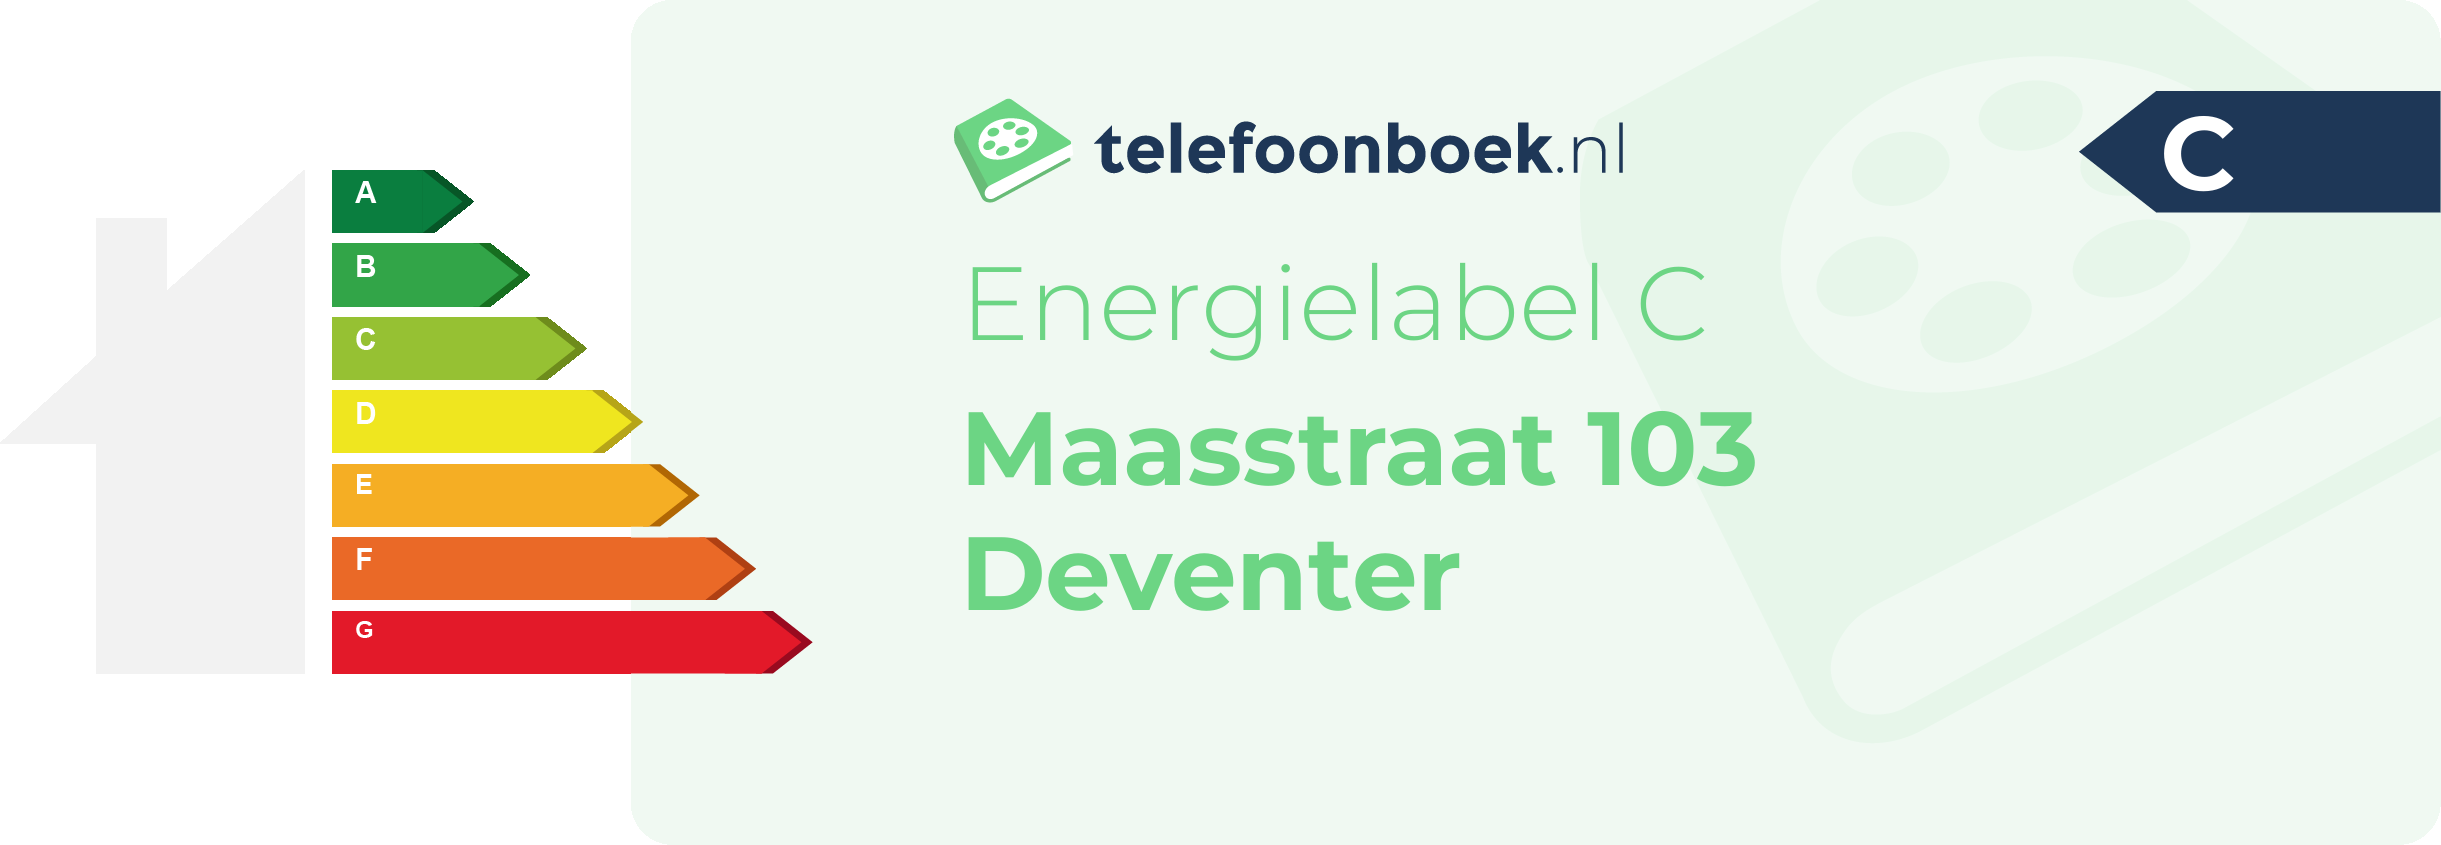 Energielabel Maasstraat 103 Deventer